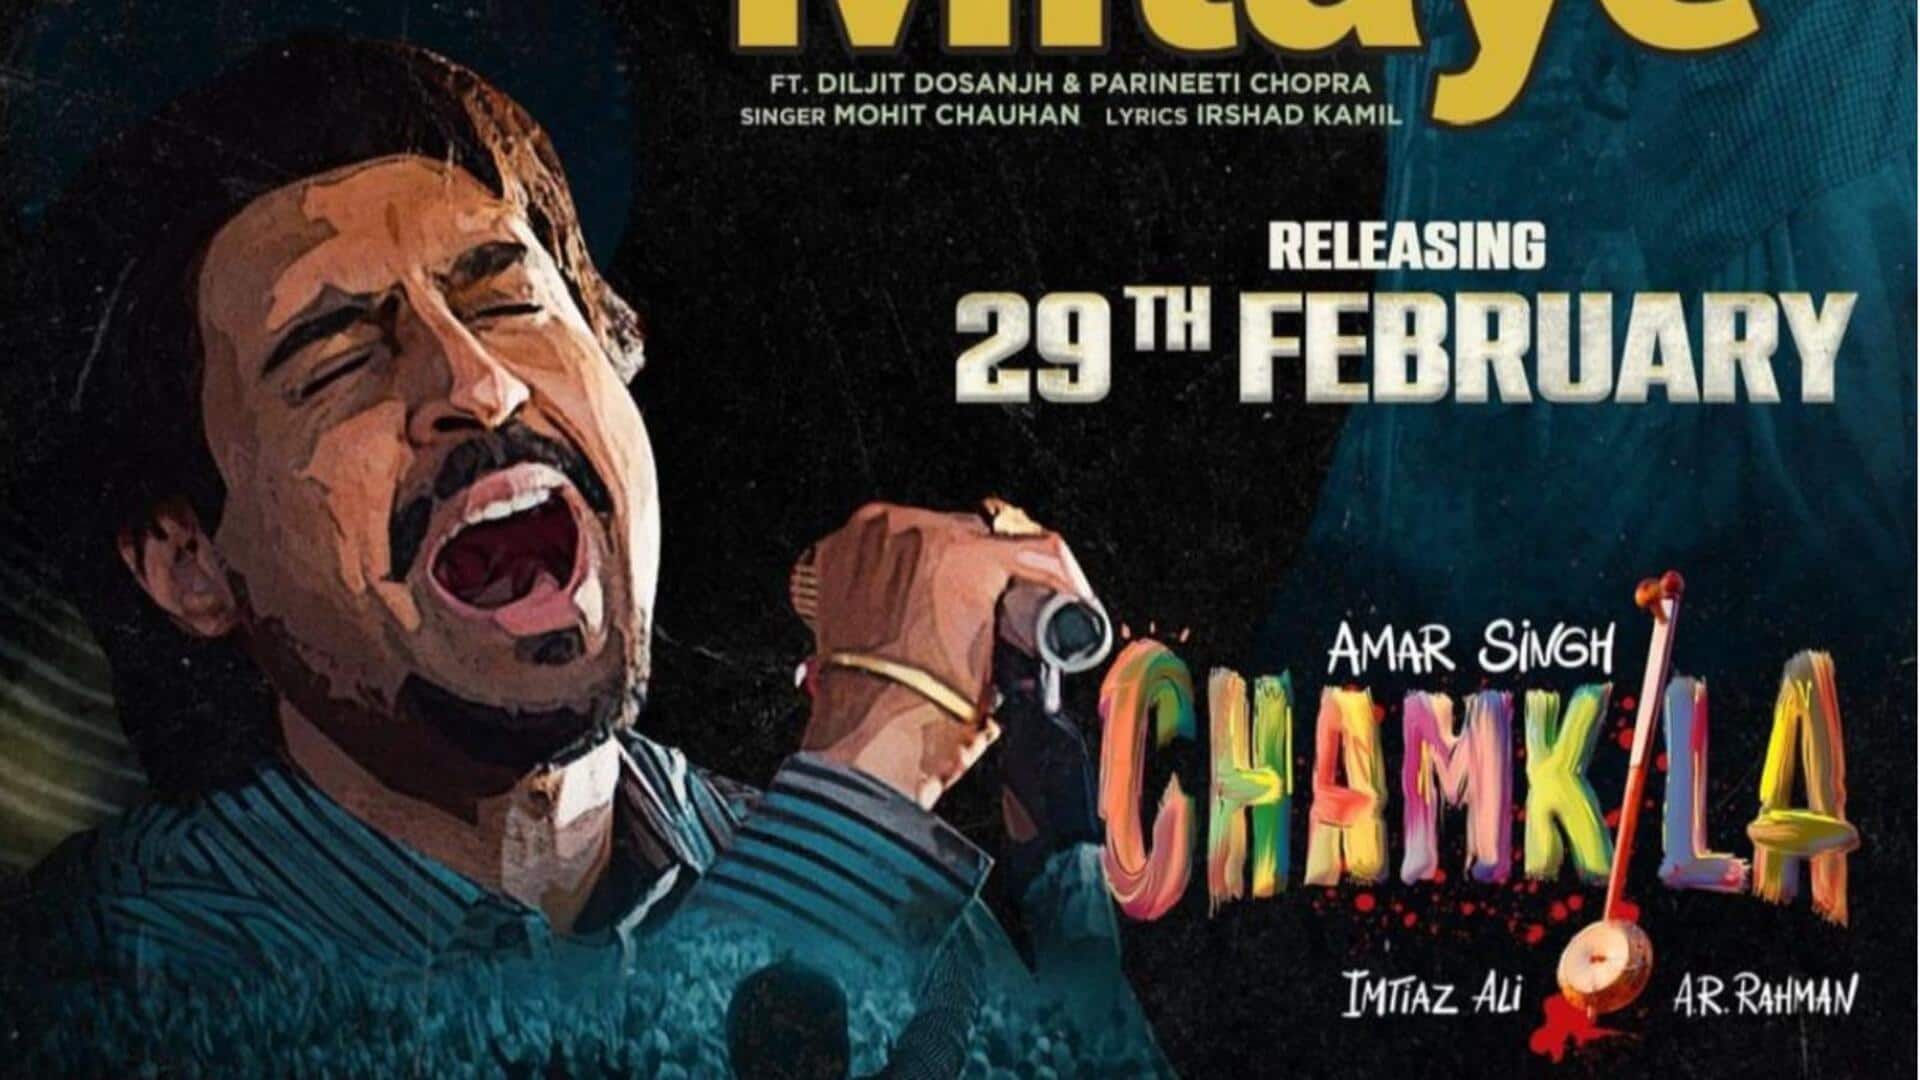 दिलजीत दोझांस और परिणीति चोपड़ा की फिल्म 'चमकीला' के एक साथ सारे गाने हुए रिलीज 